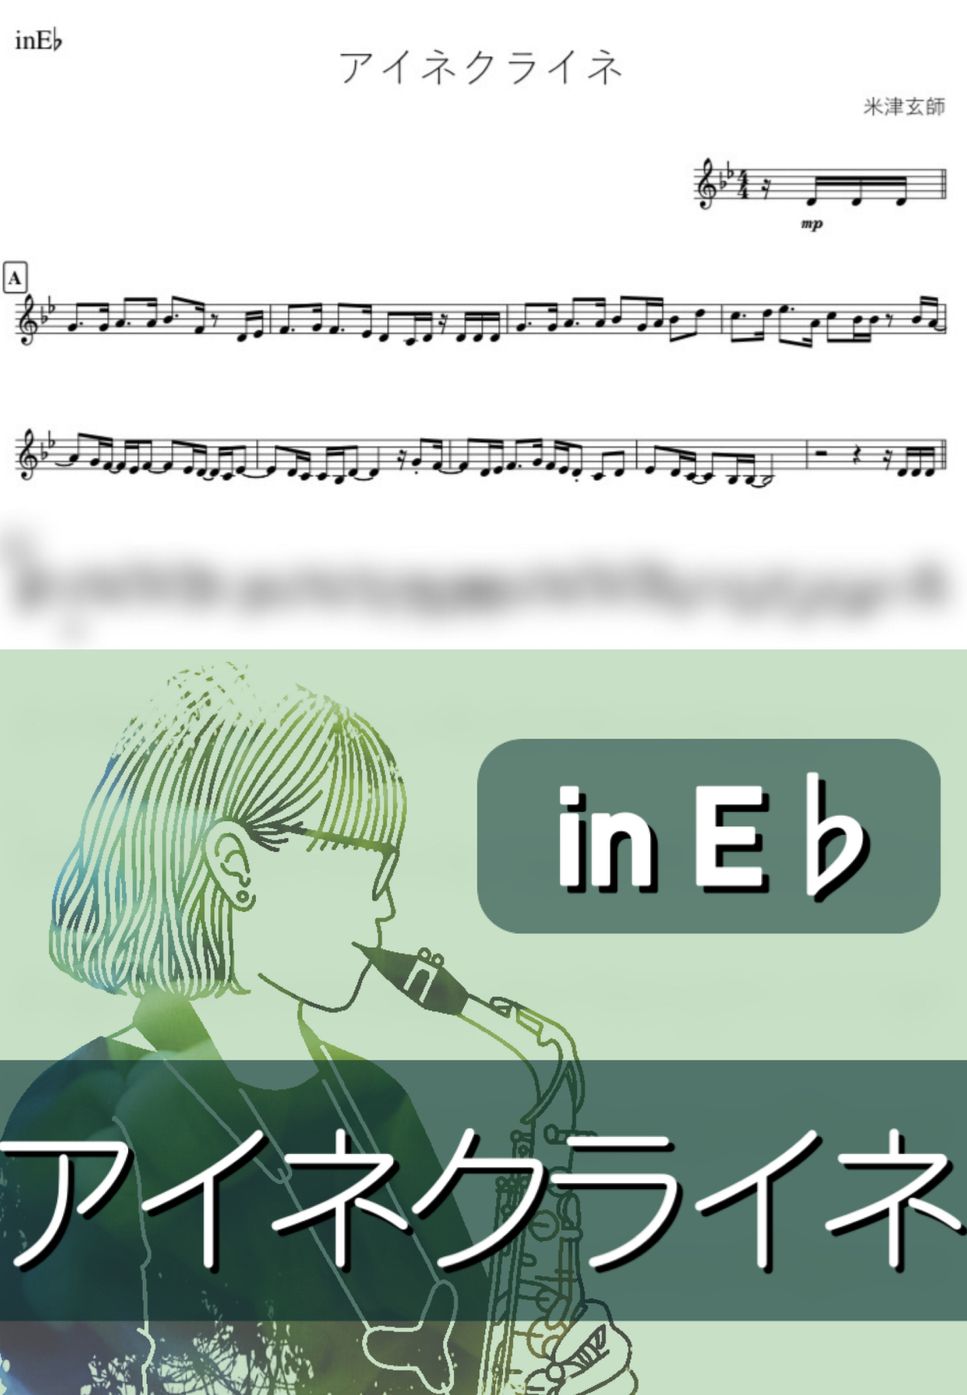 米津玄師 - アイネクライネ (E♭) by kanamusic